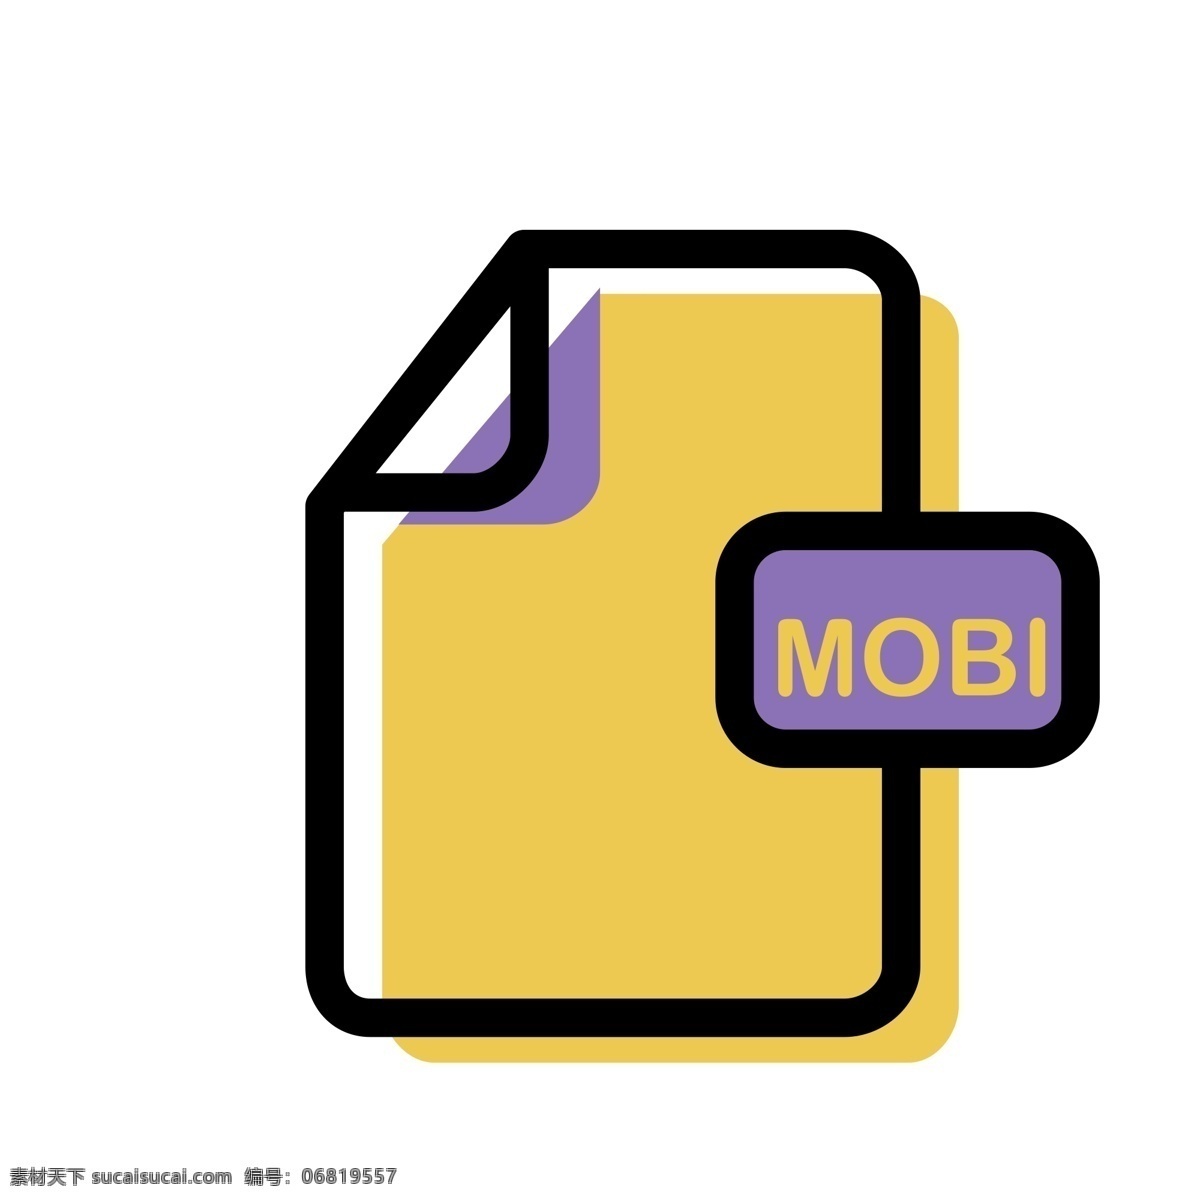 mobi 文件 格式 免 抠 图 格式文件 mobi格式 ui应用图标 电脑文件图标 软件图标 卡通图案 卡通插画 软件格式